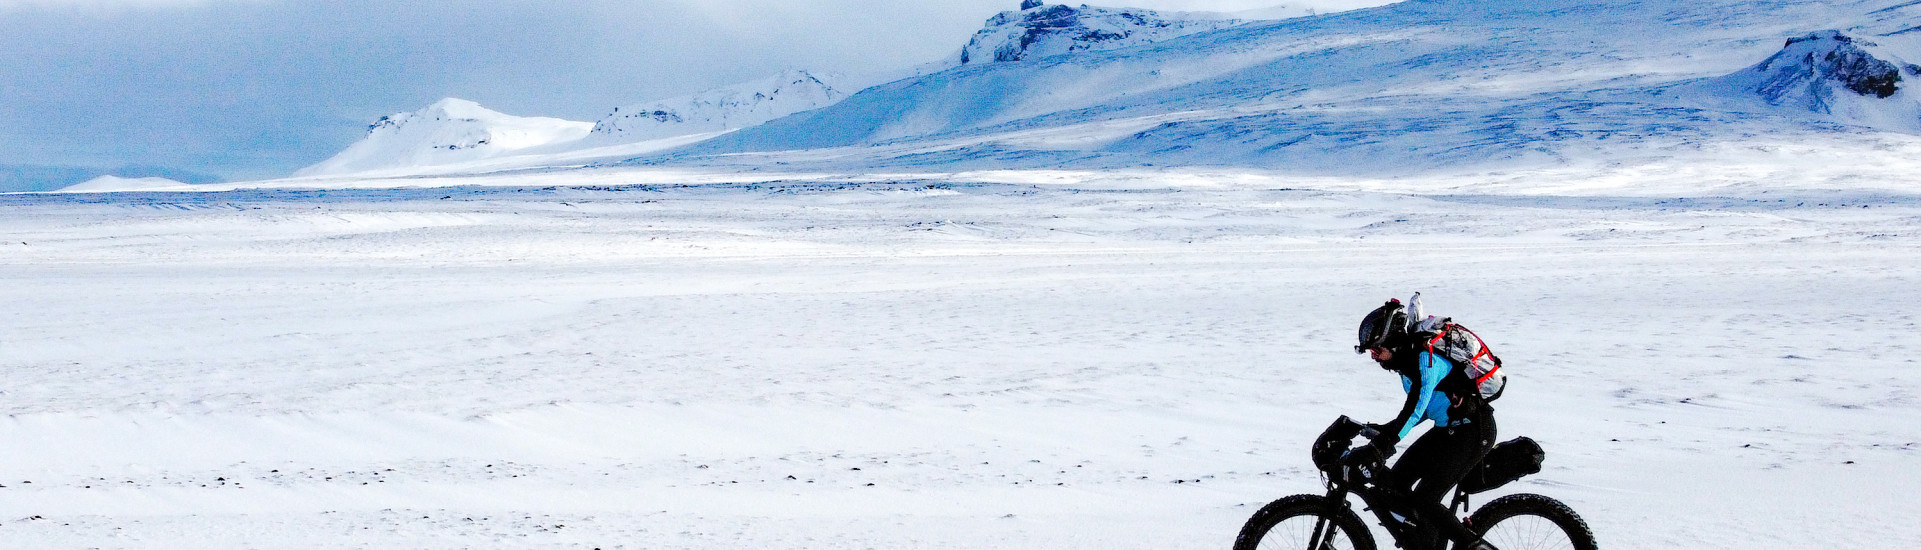 Omar Di Felice completa la traversata dell’Islanda. Ora è pronto ad affrontare l’ultima parte del suo Artic World Tour